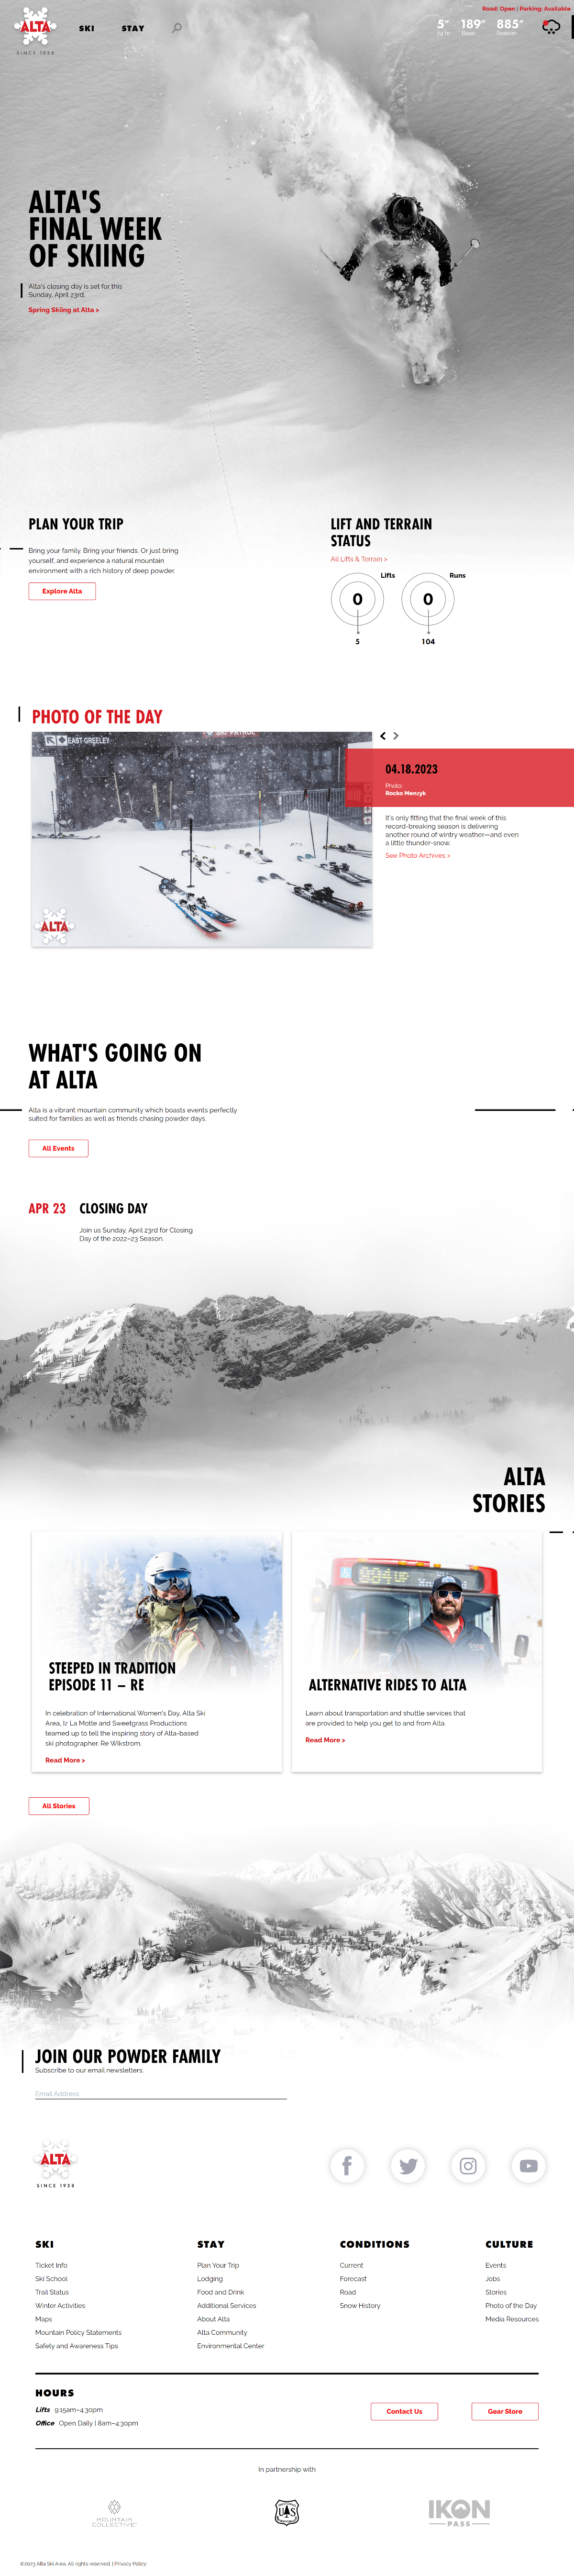 screenshot of alta's website